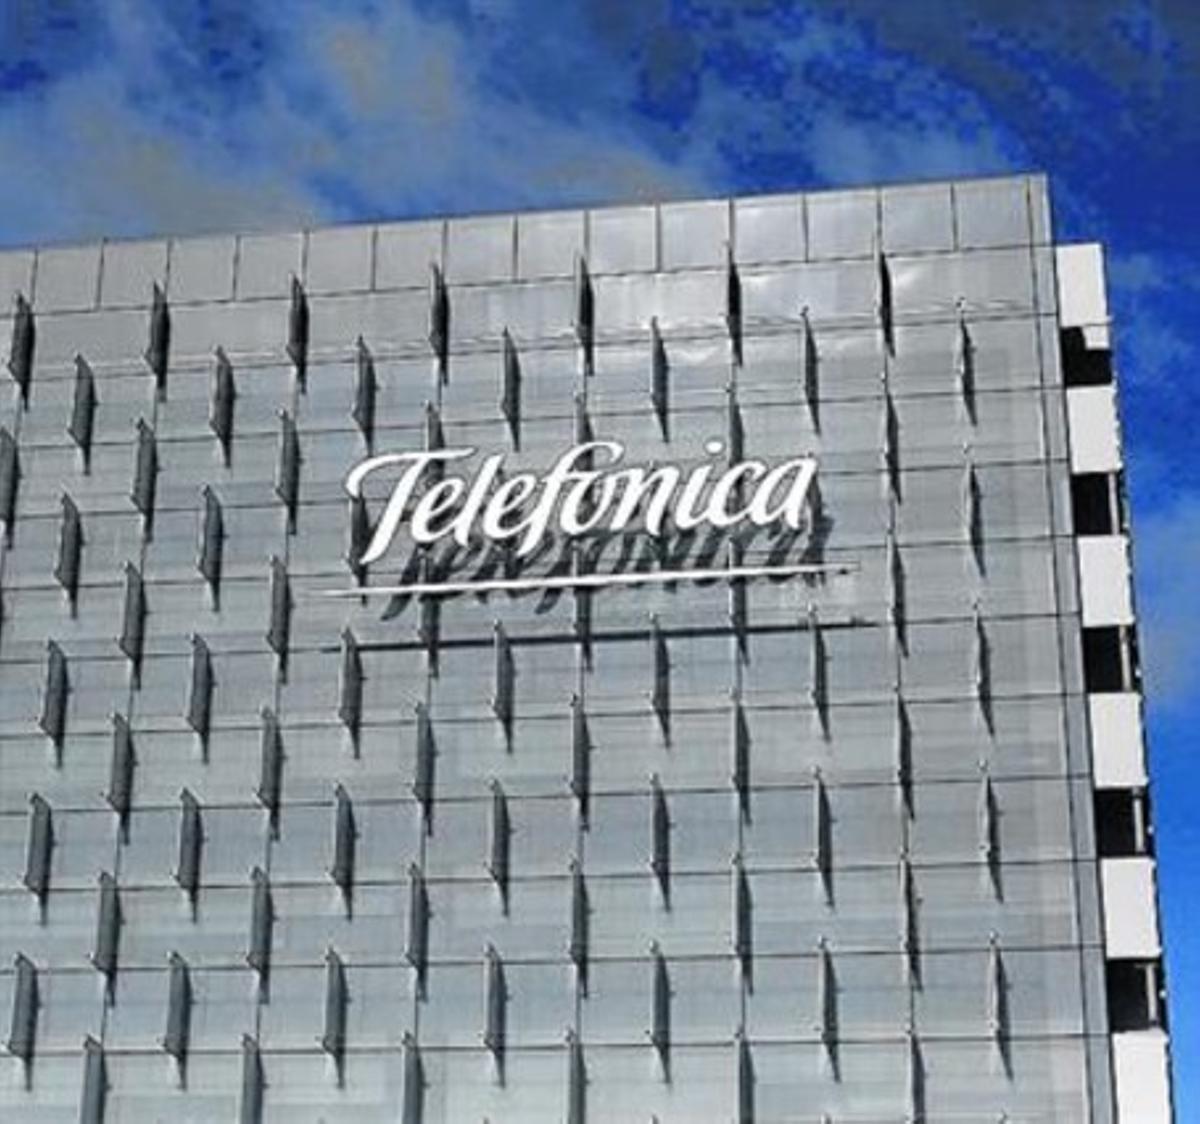 Imagen del cuartel general de Telefónica en Madrid, con el logotipo.